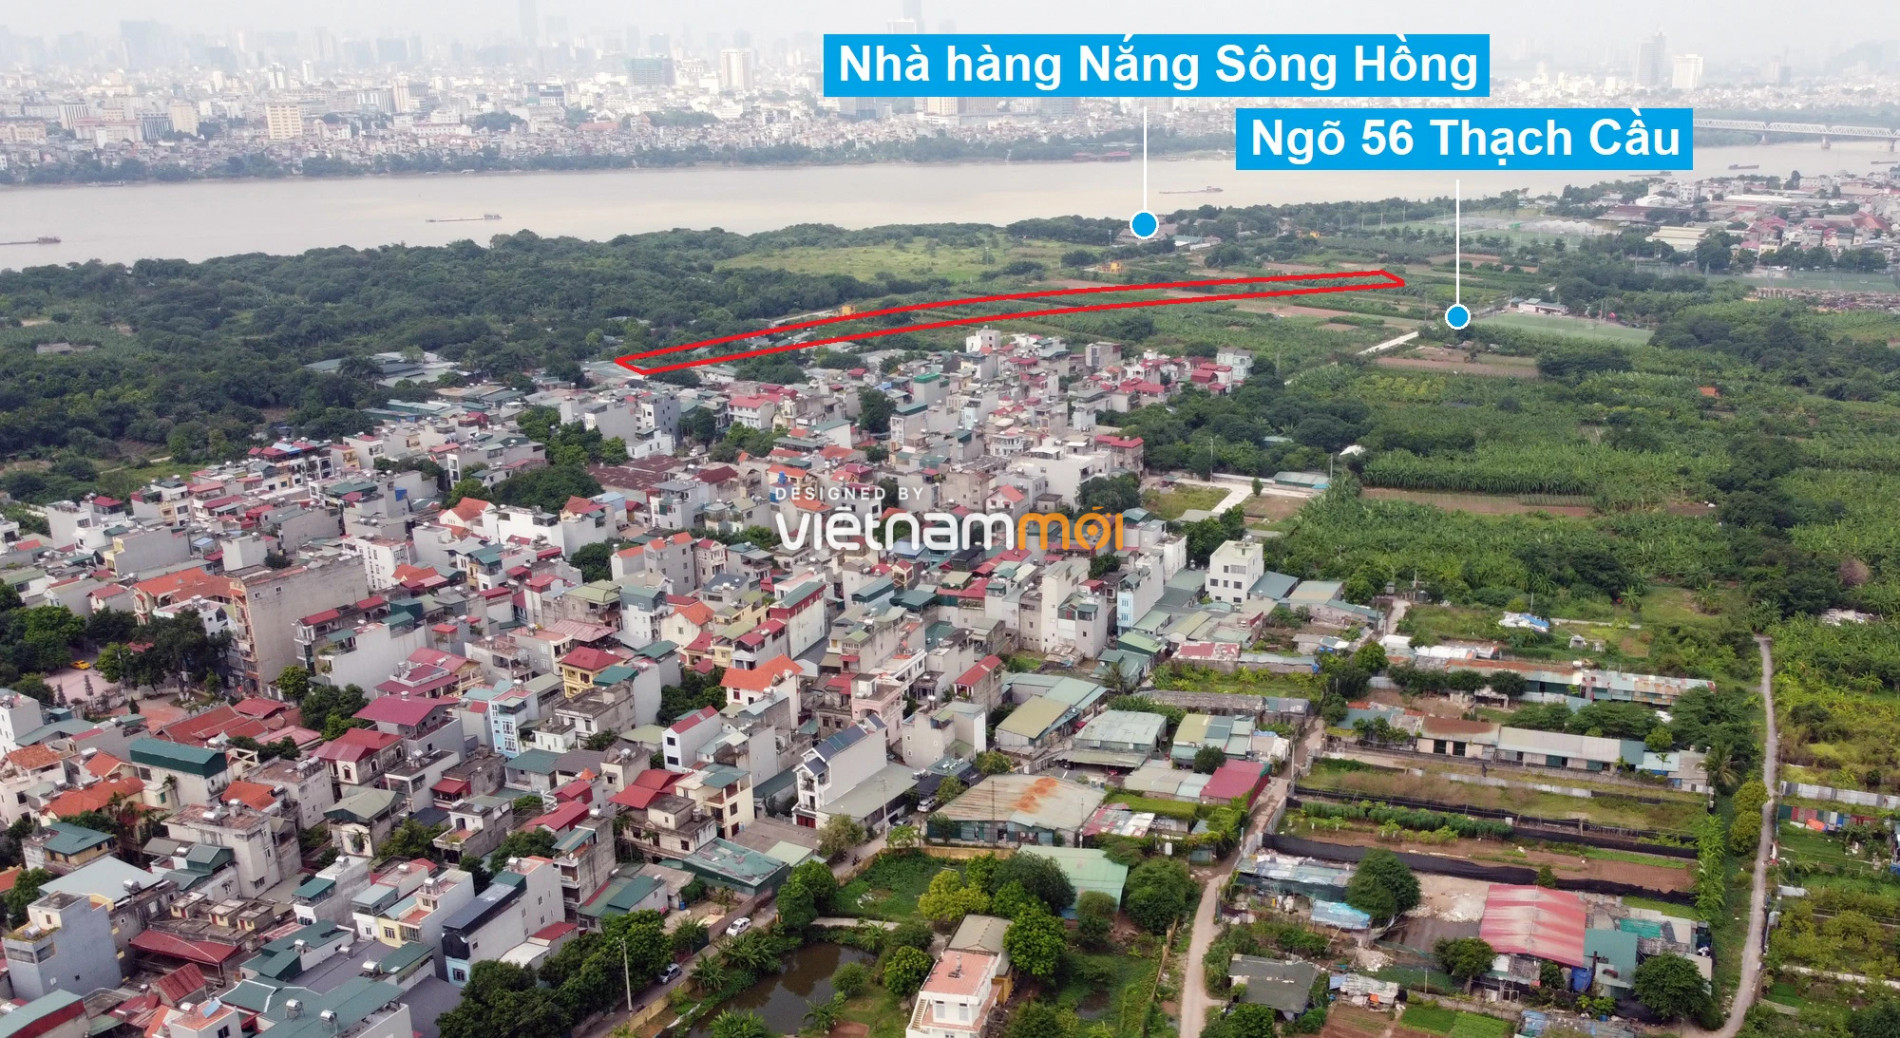 Những khu đất sắp thu hồi để mở đường ở phường Long Biên, Long Biên, Hà Nội (phần 5) - Ảnh 6.